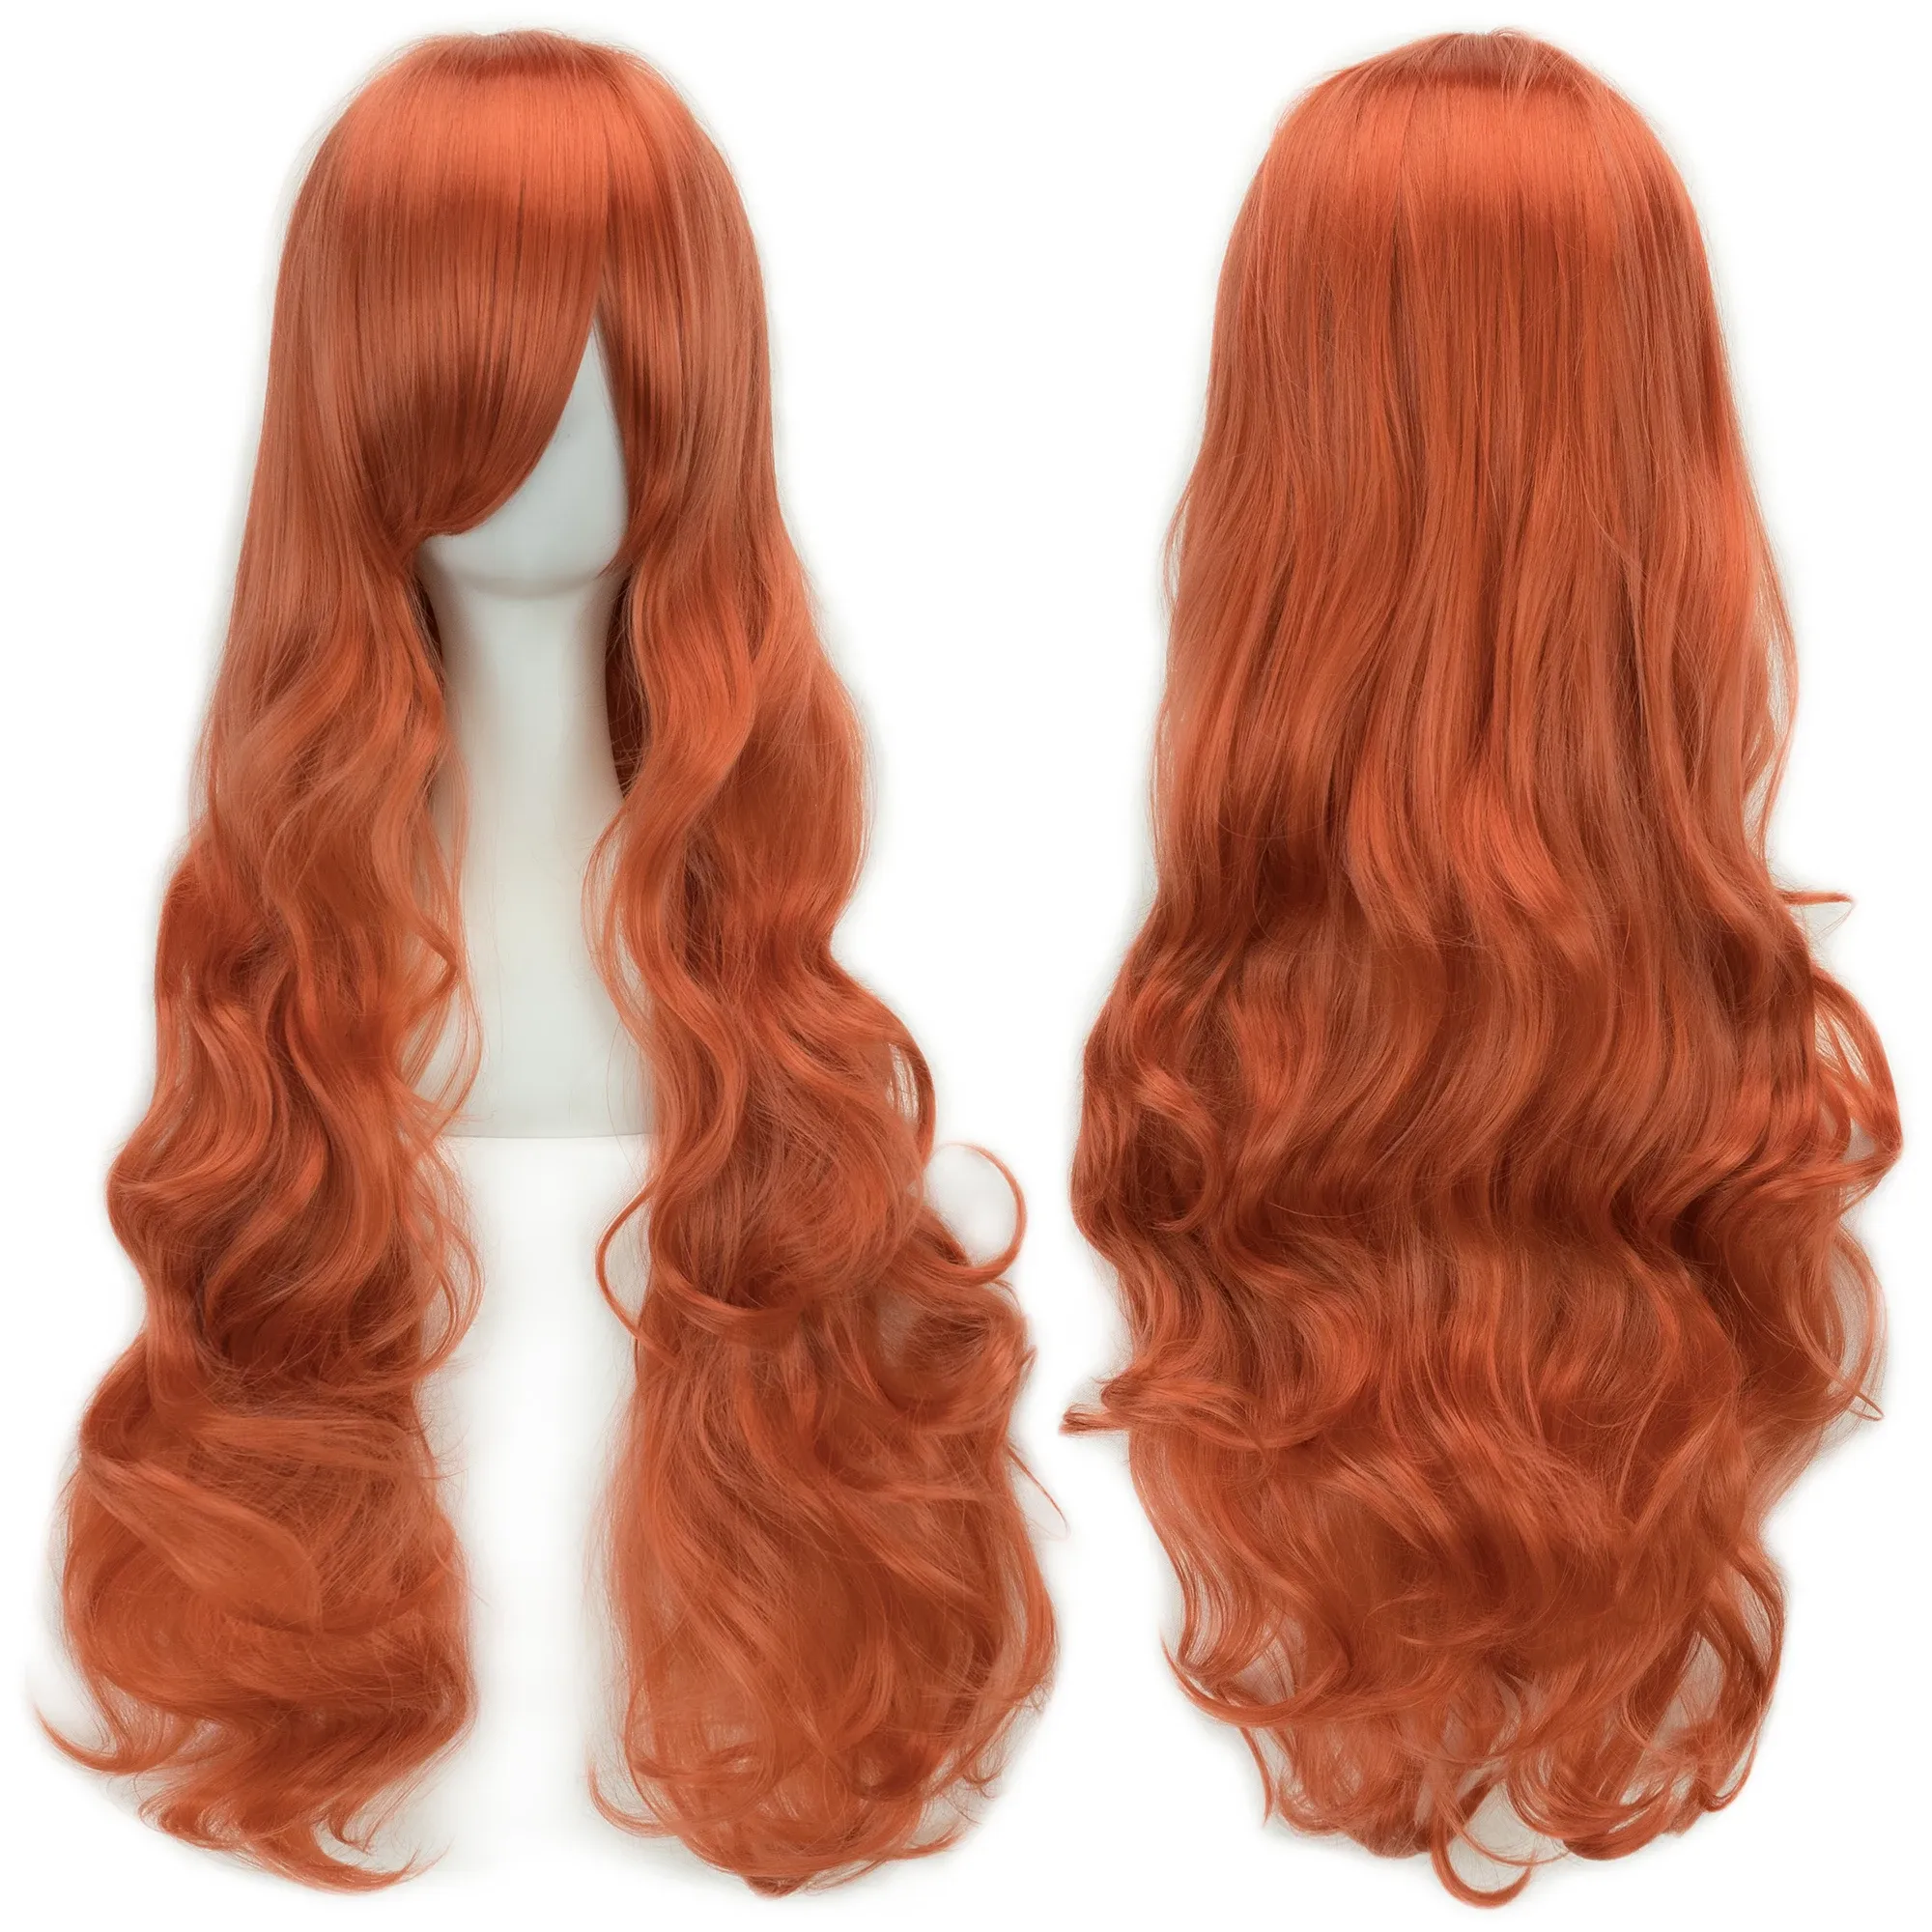 Perruques Soowee 20 couleurs 32 pouces de long Femmes Perruques Synthétiques HEURS RÉSISTANT RÉSISTANT BLANC NOIR WAVY COSPlay Wig Party Hair Accessoires